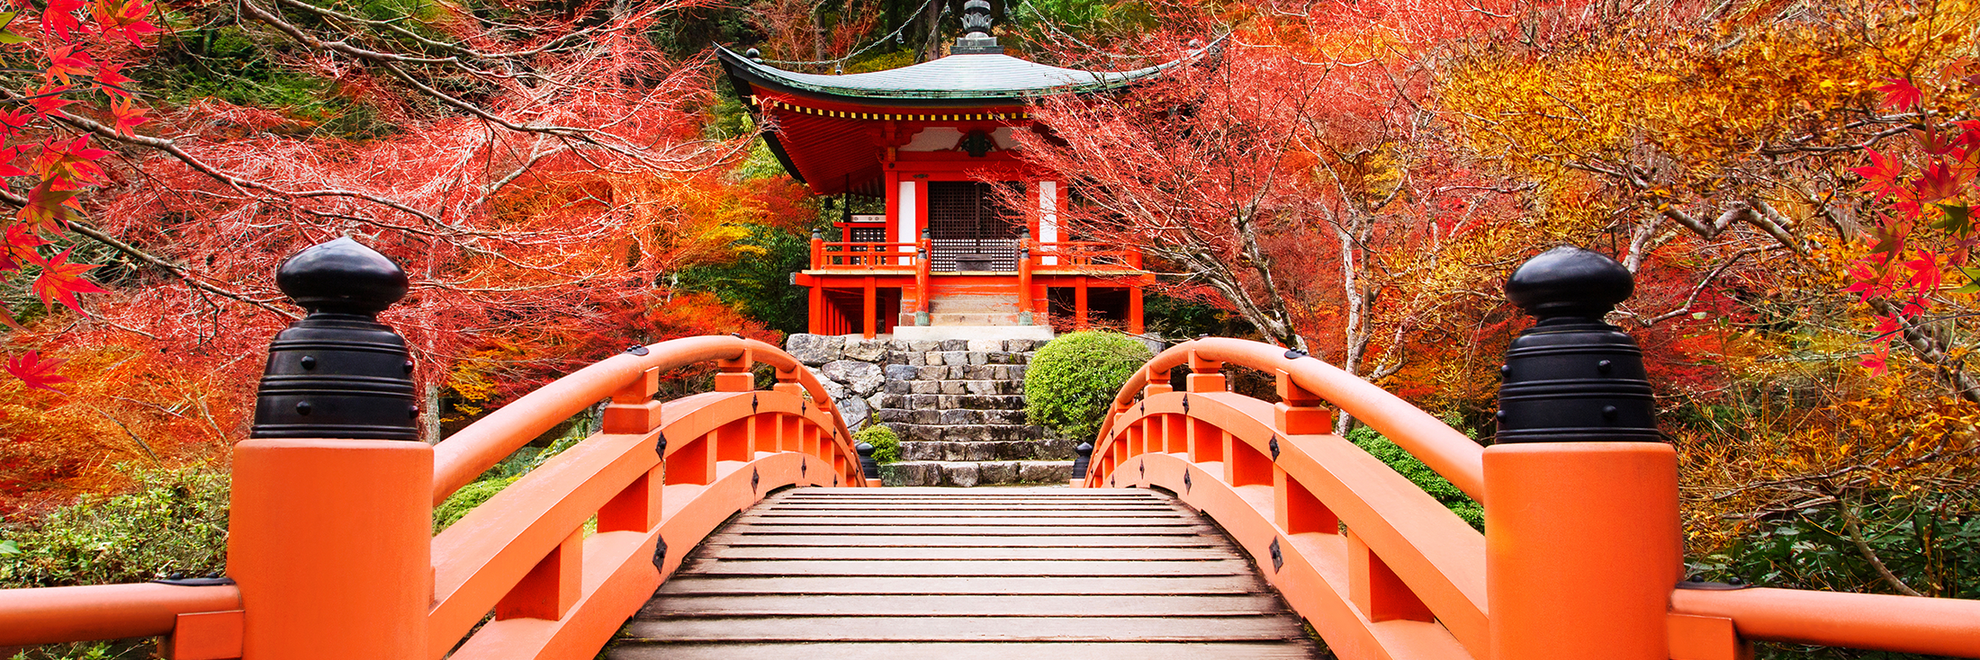 World-of-Hyatt-P221-Kyoto-Daigoji-Temple-Autumn